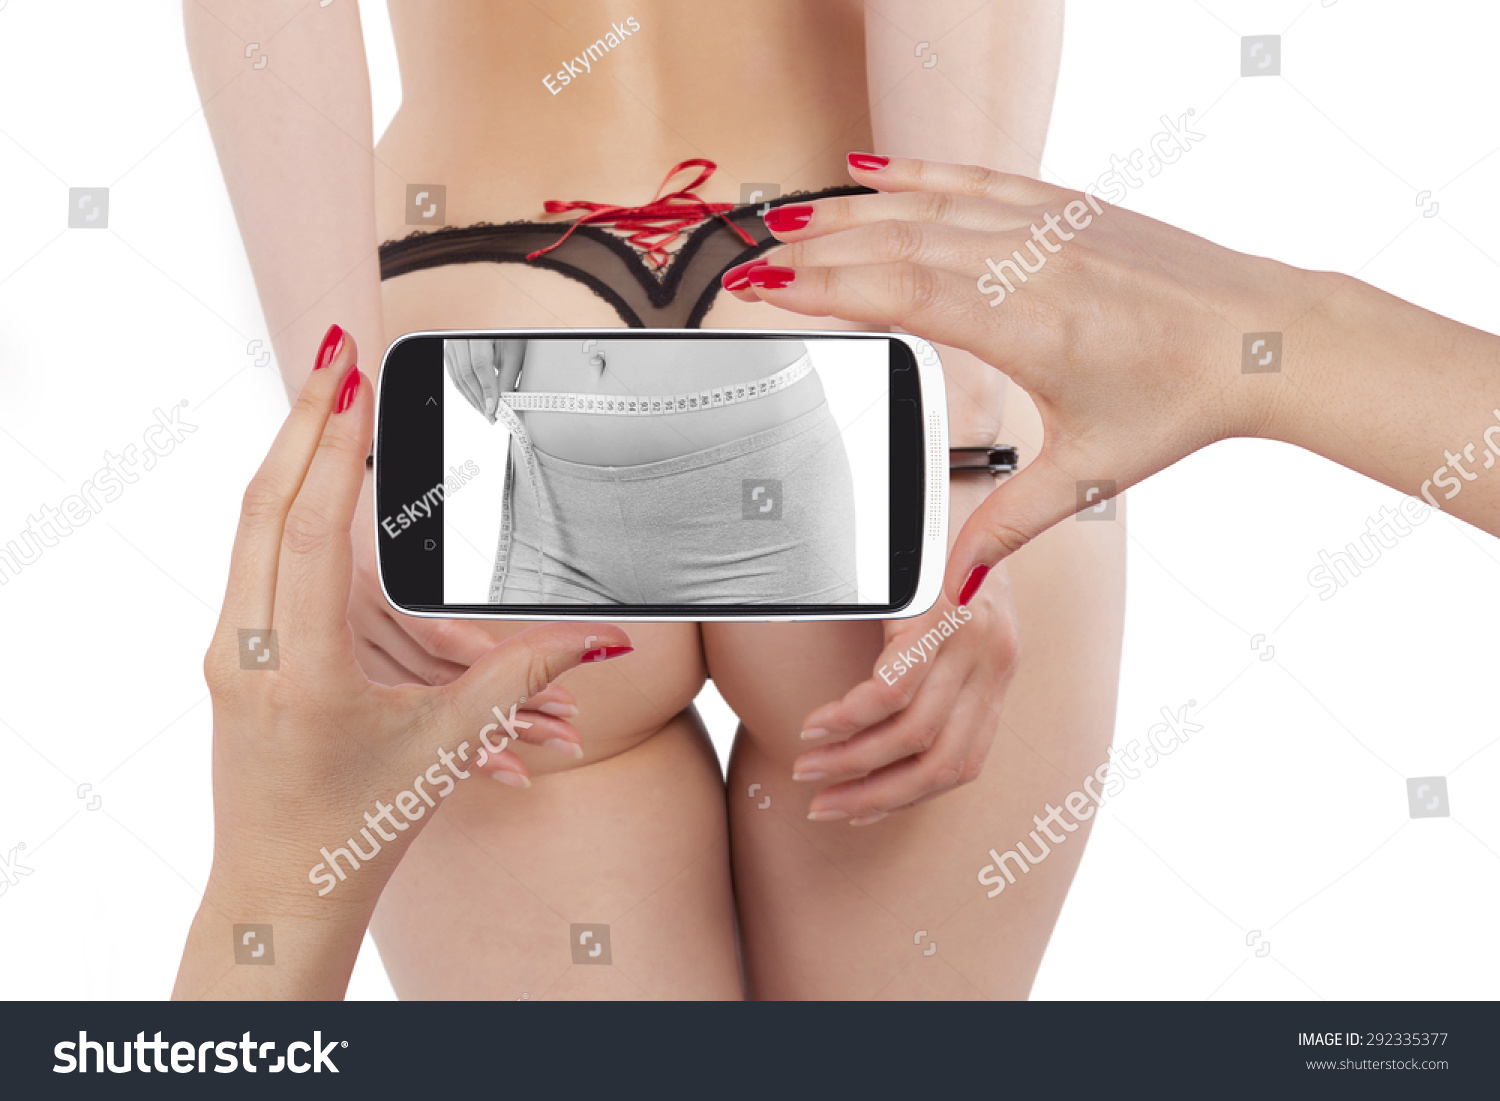 Hot Ass Photos